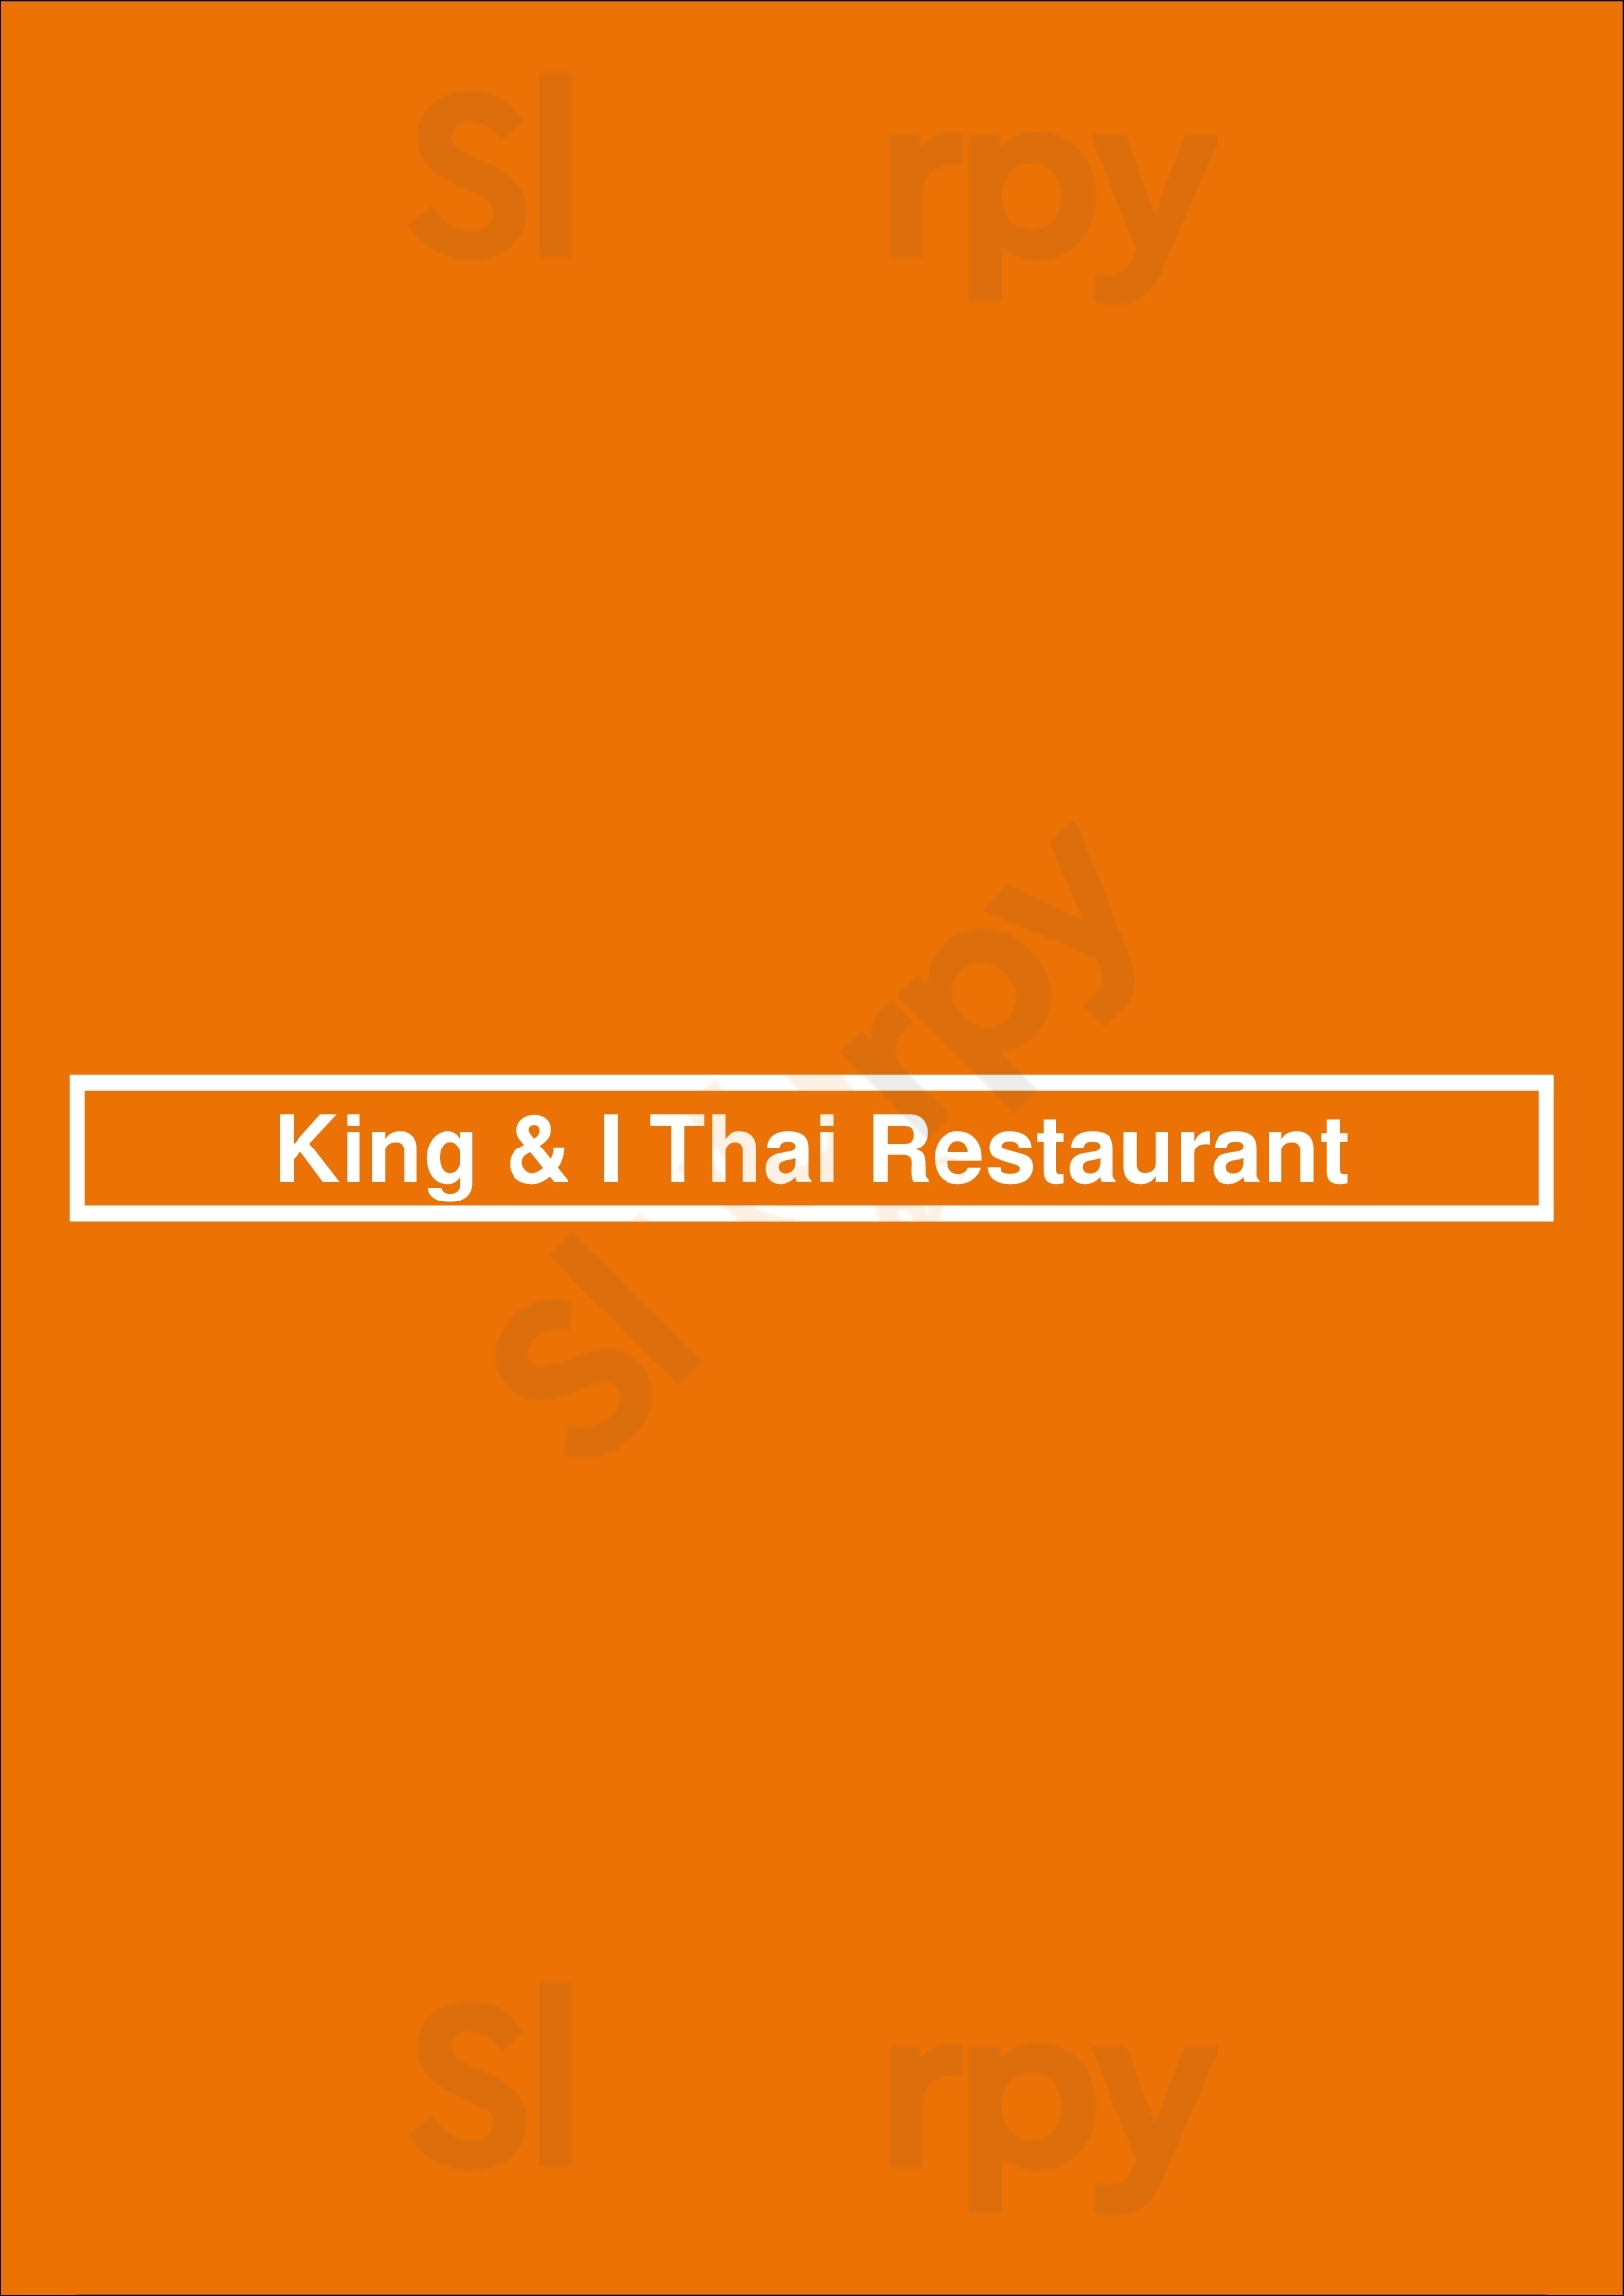 King & I Thai Restaurant Hartford Menu - 1